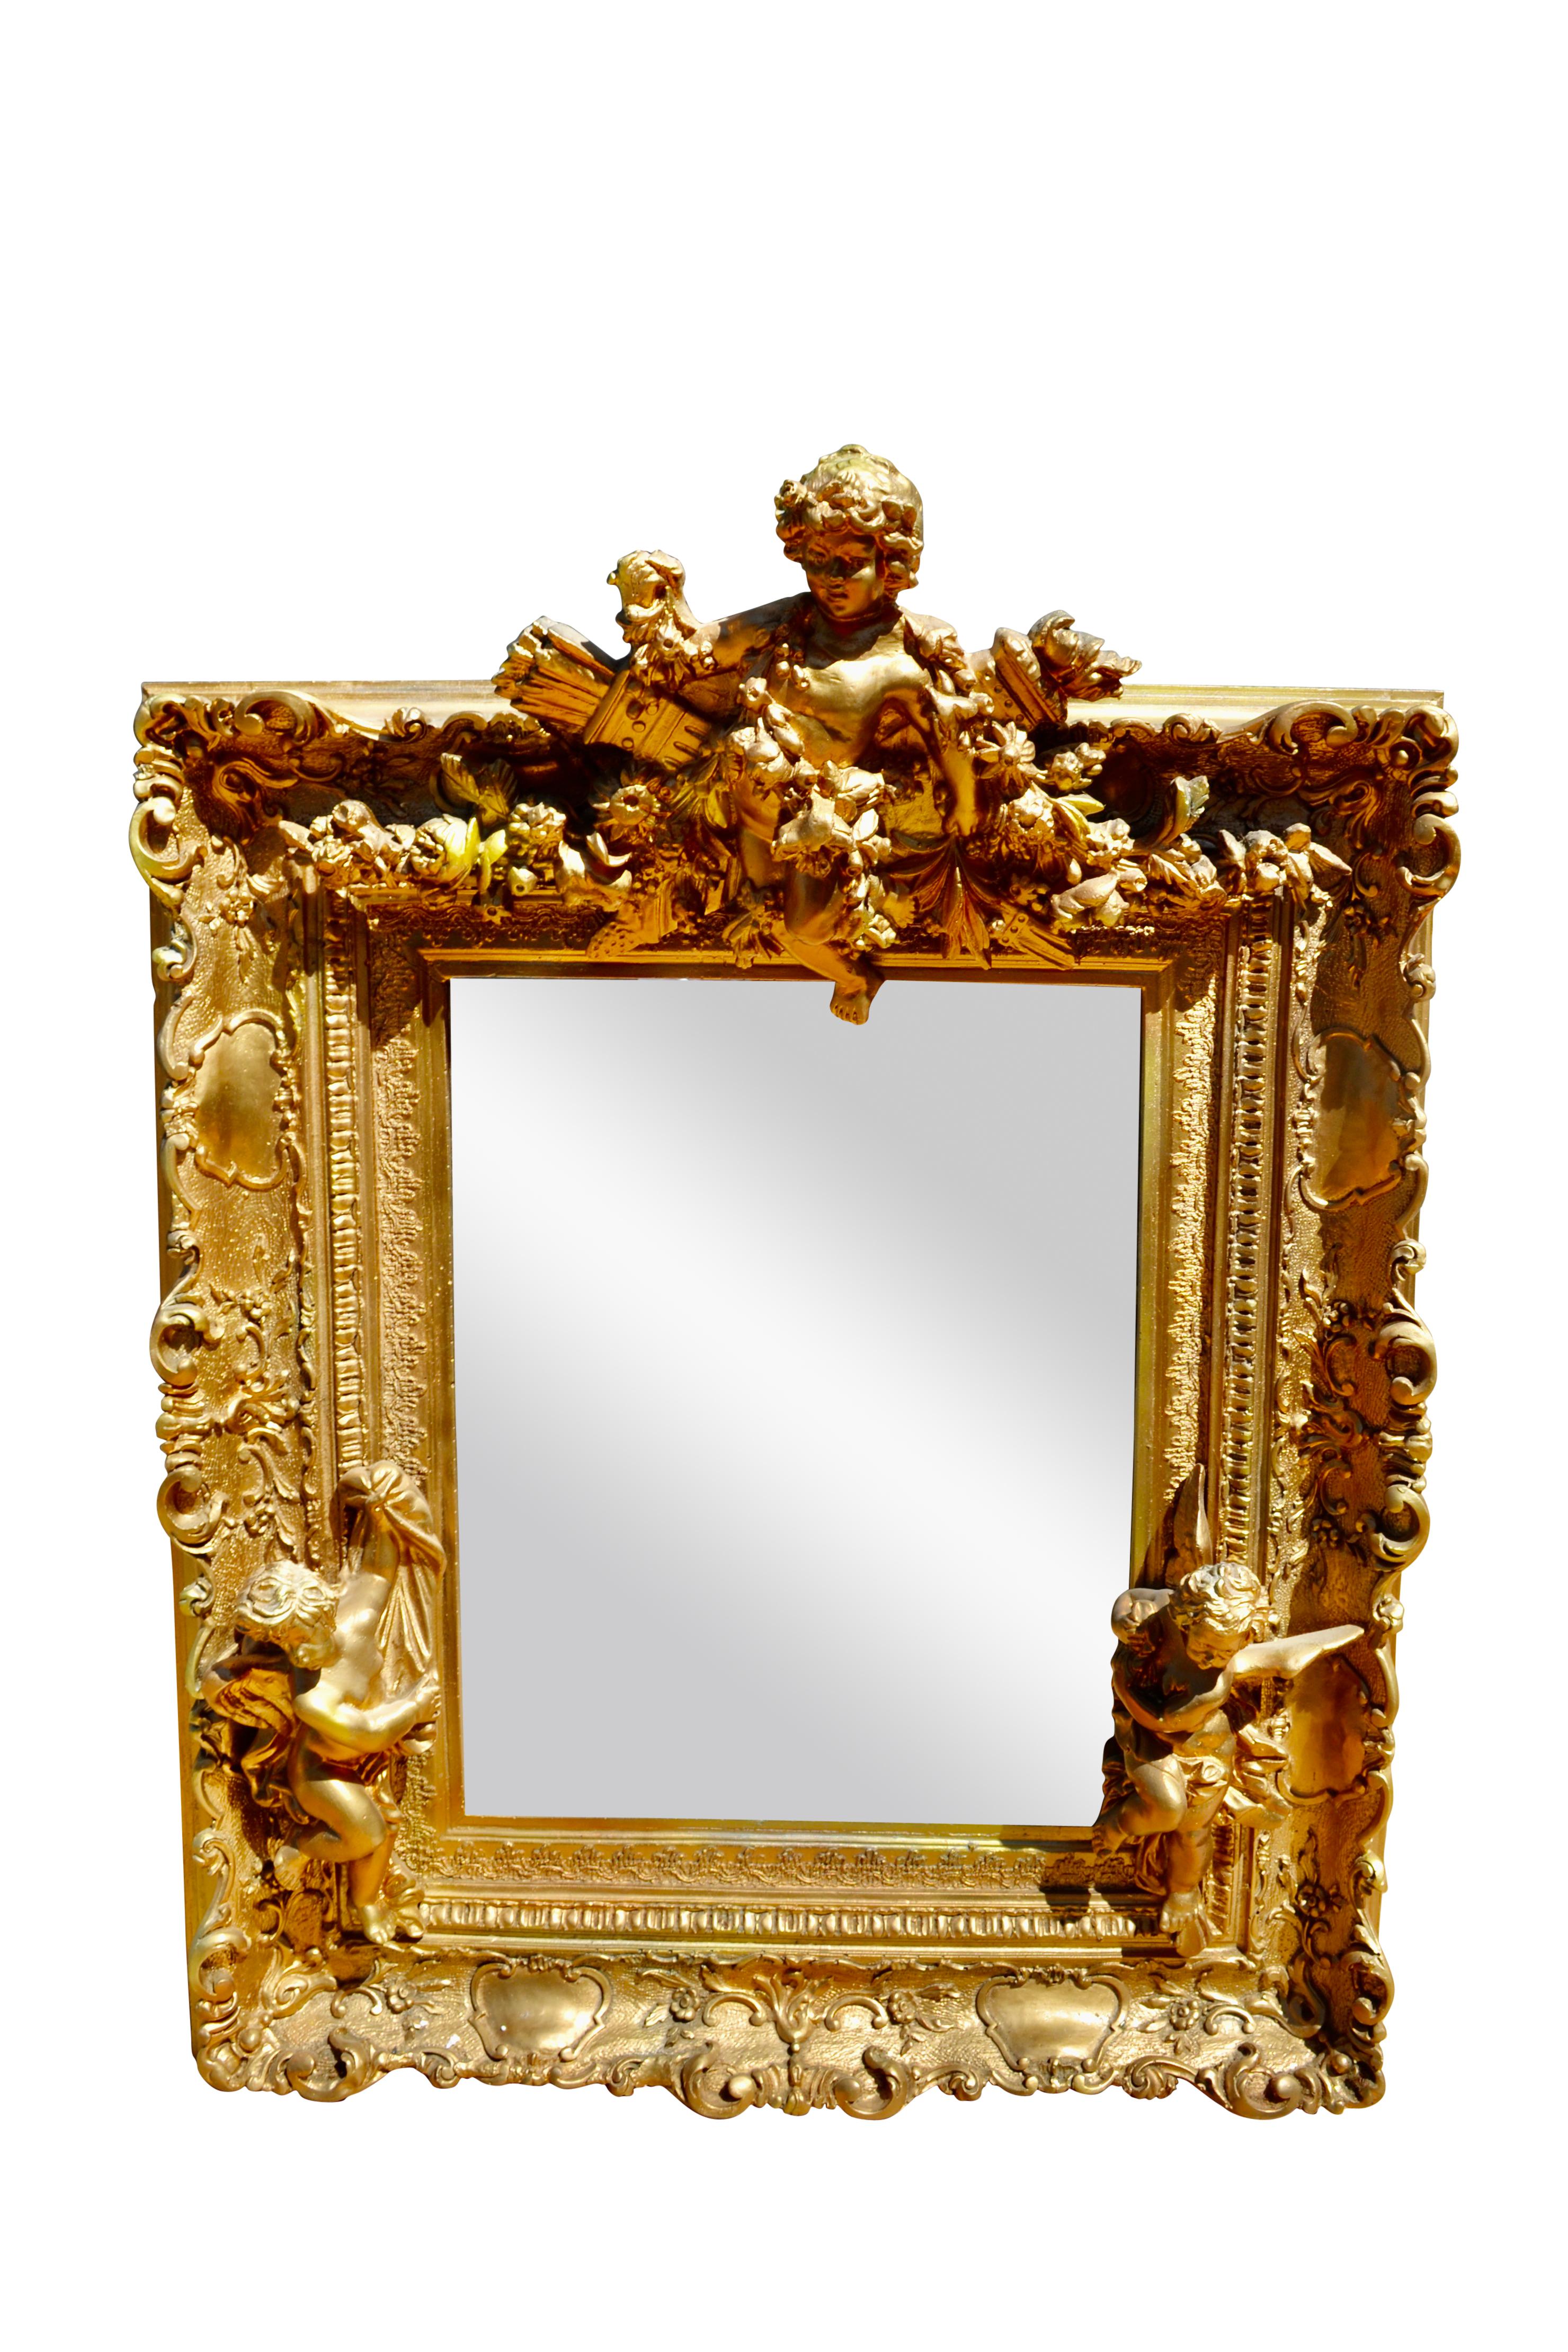 Ein seltener und höchst ungewöhnlicher Spiegelrahmen aus geschnitztem Holz, Gesso und Vergoldung im französischen Stil Napoleons III. Der vergoldete Rahmen selbst ist vollständig mit Kartuschen verziert und wird durch drei applizierte geschnitzte